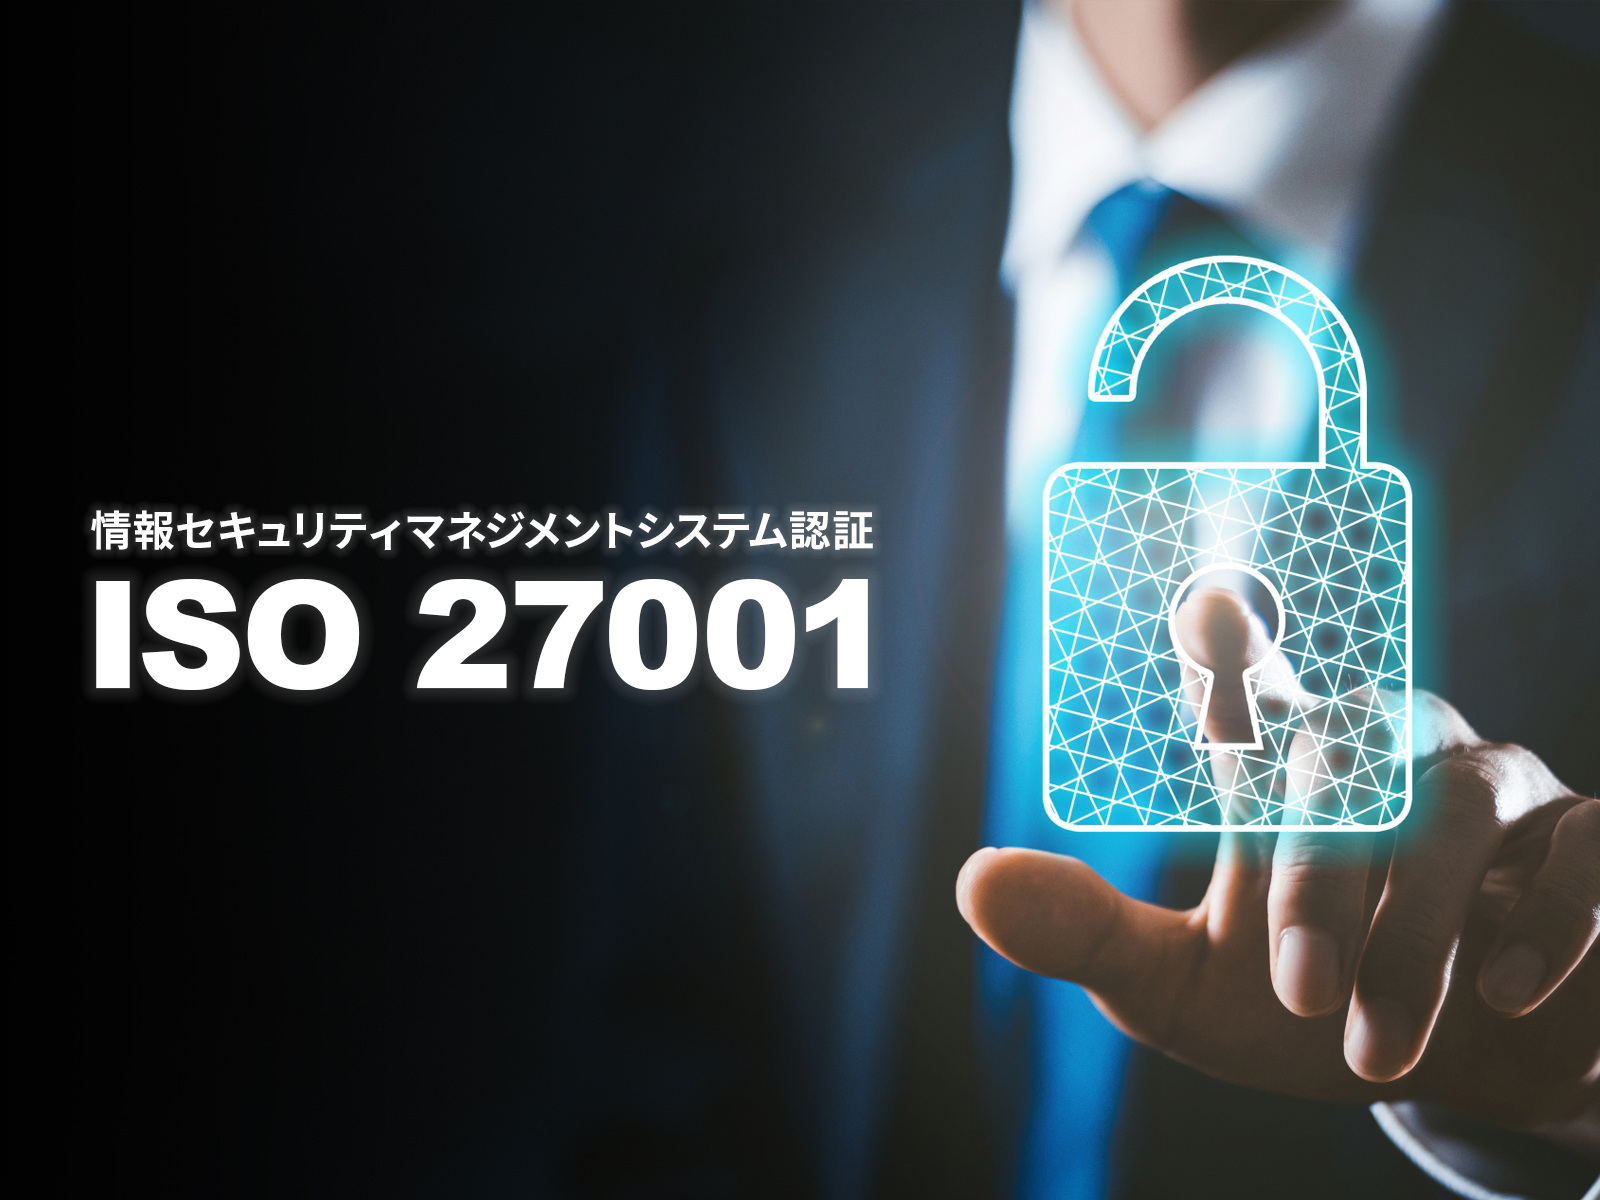 株式会社オーエス東京本部は「ISO 27001」の認証を取得いたしました。